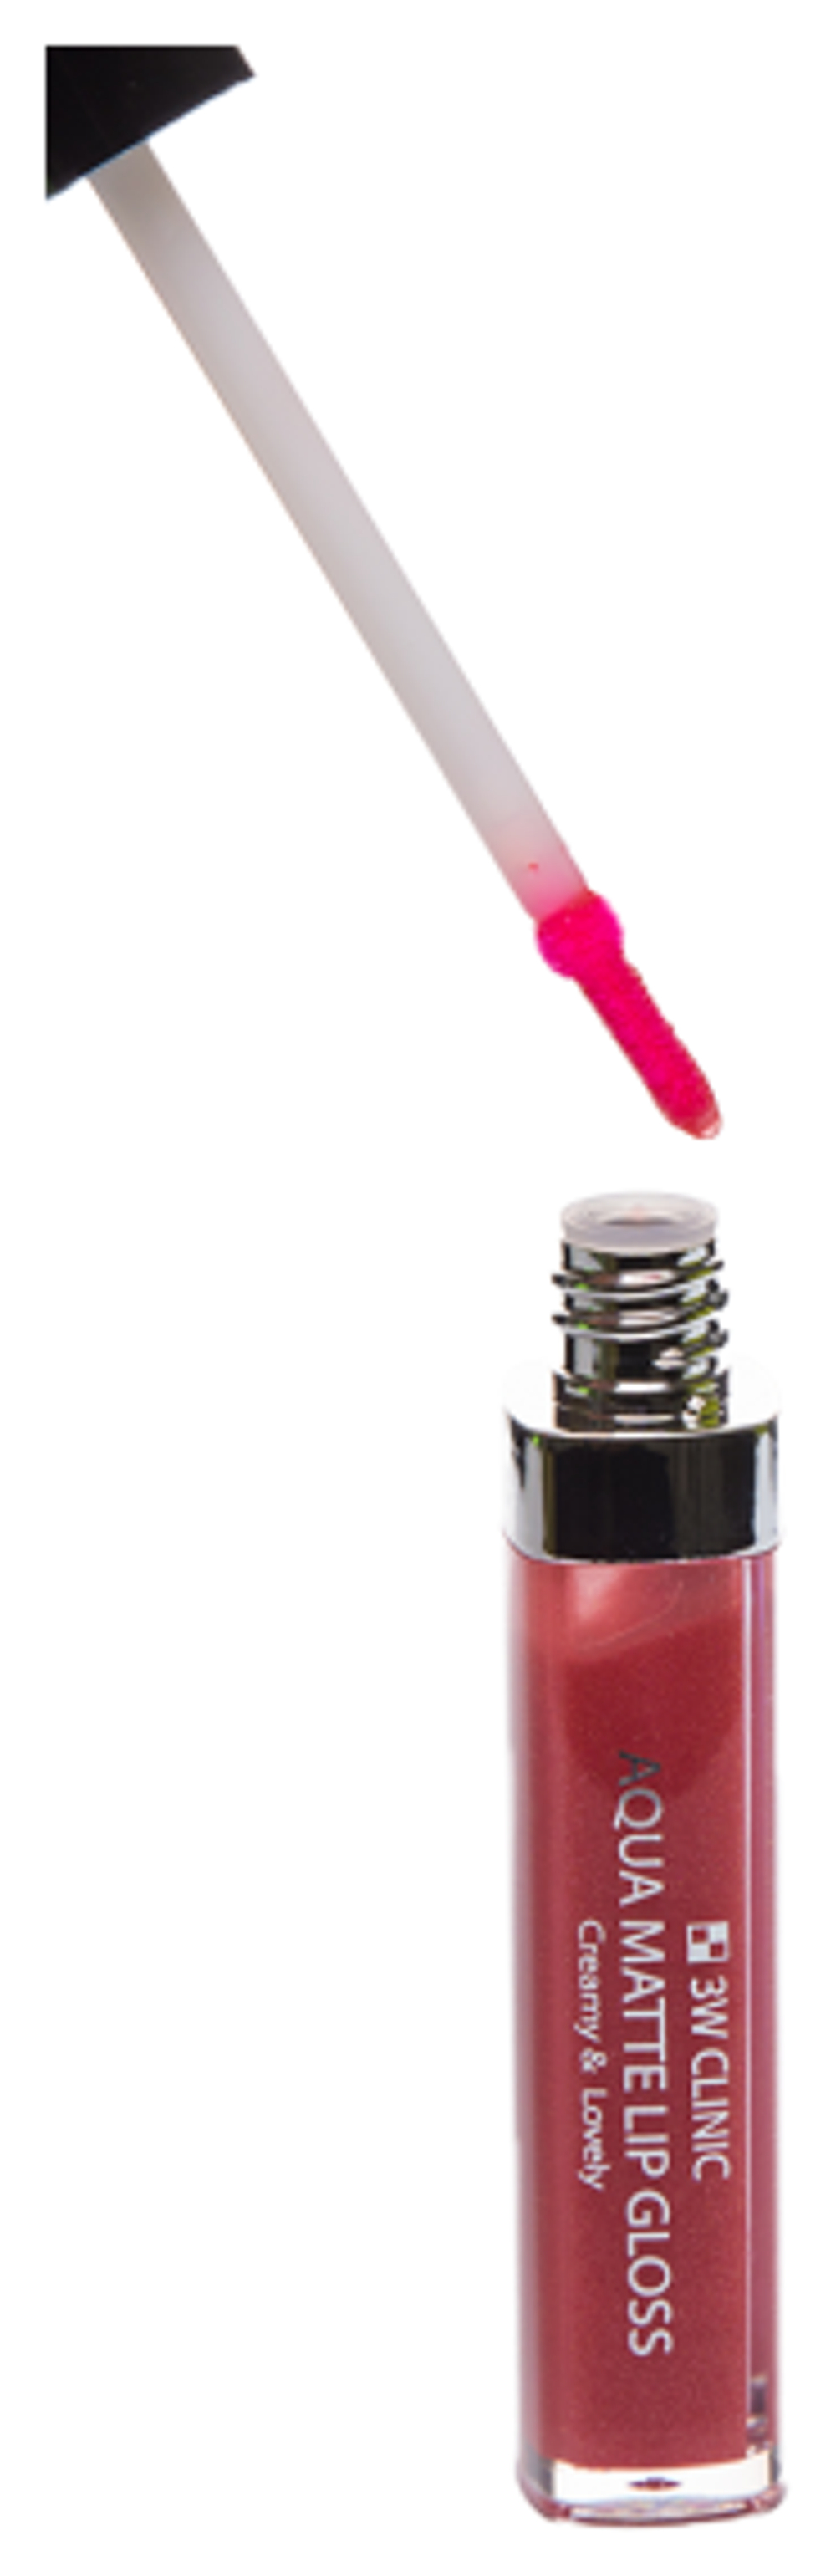 Блеск для губ 3W Clinic #08 Aqua Matte Lip Gloss Shine Rich цвет Сочный Блестящий 6,5 г